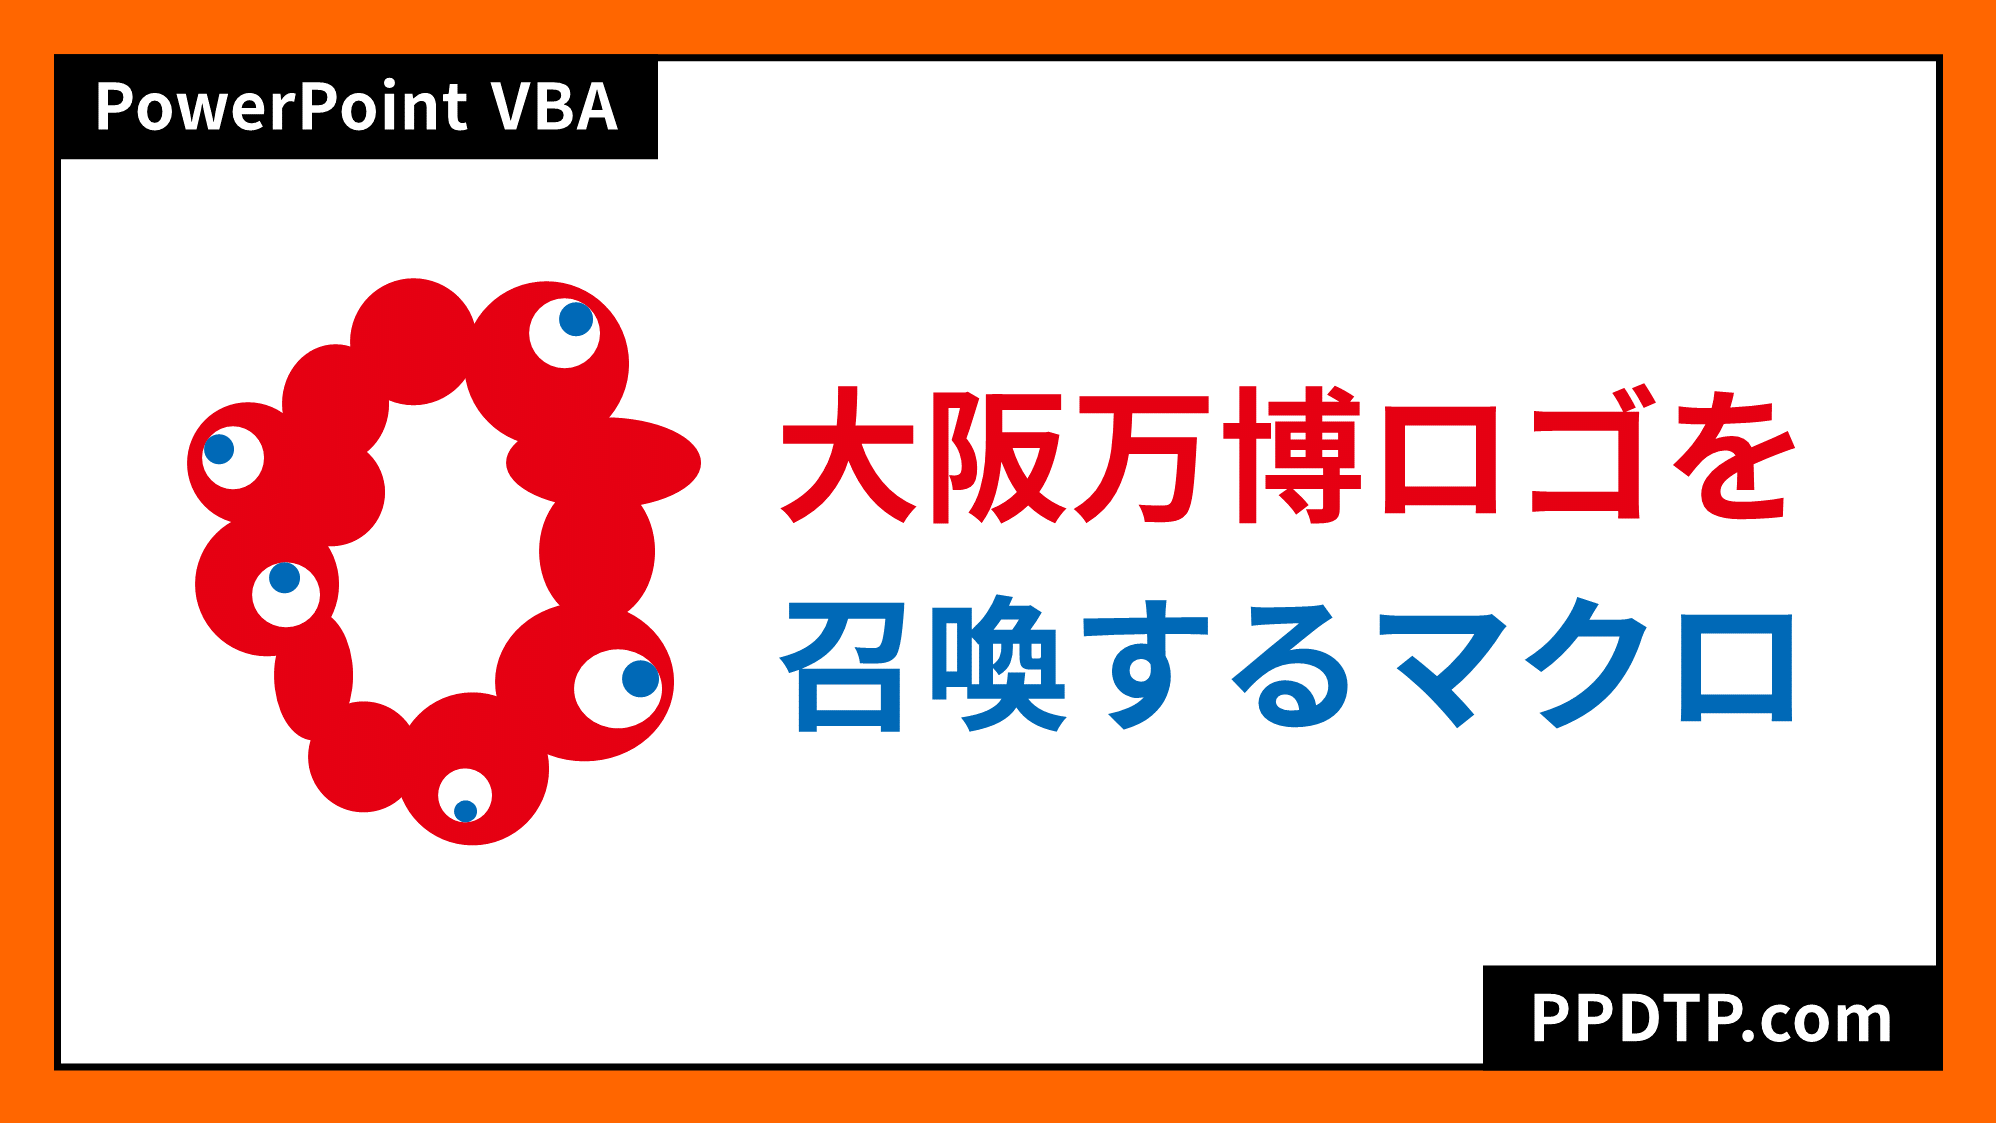 大阪万博ロゴ コロシテくん を召喚するパワポマクロ Ppdtp